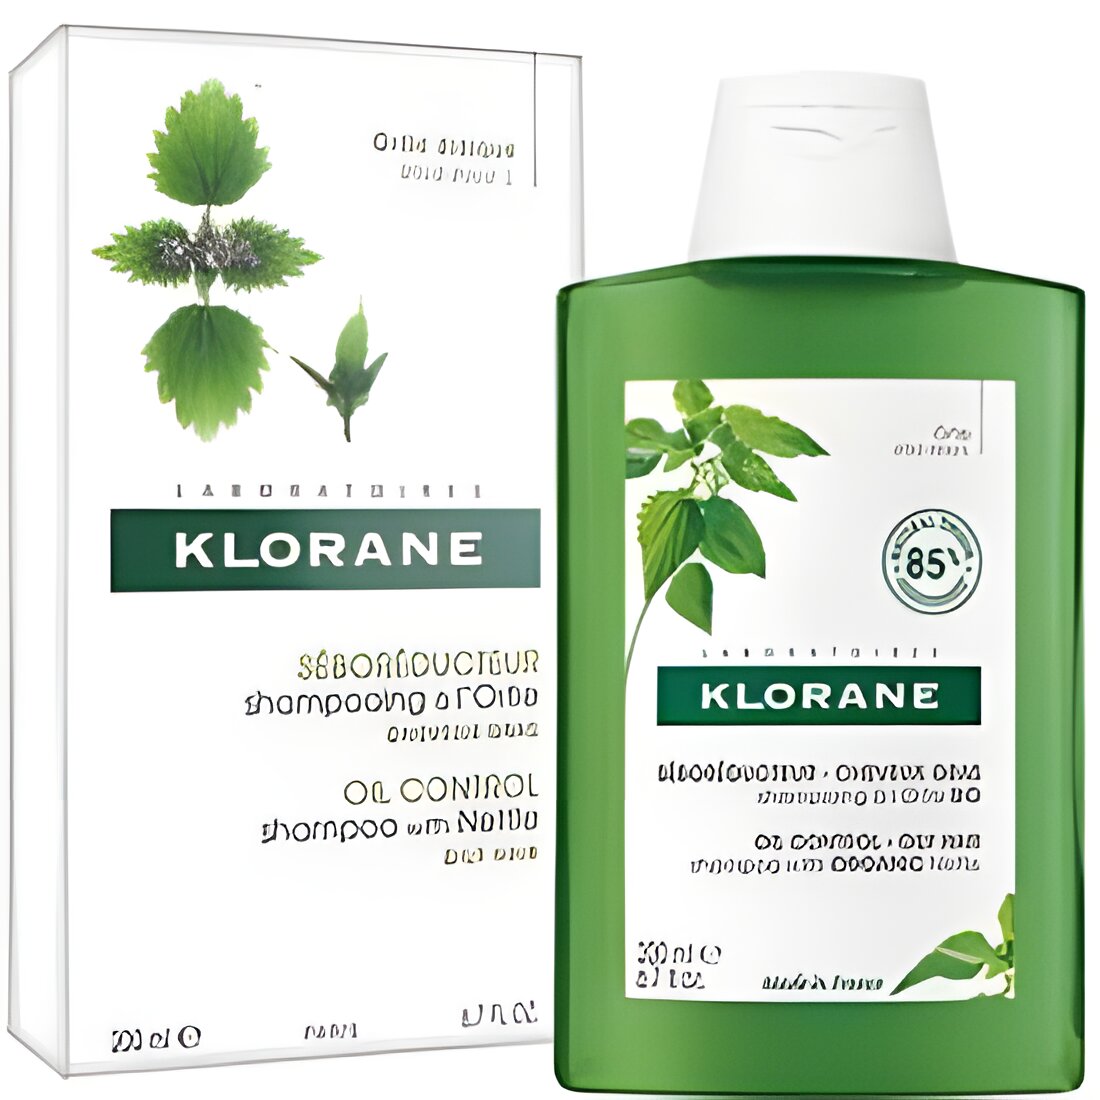 Free KLORANE Shampoo